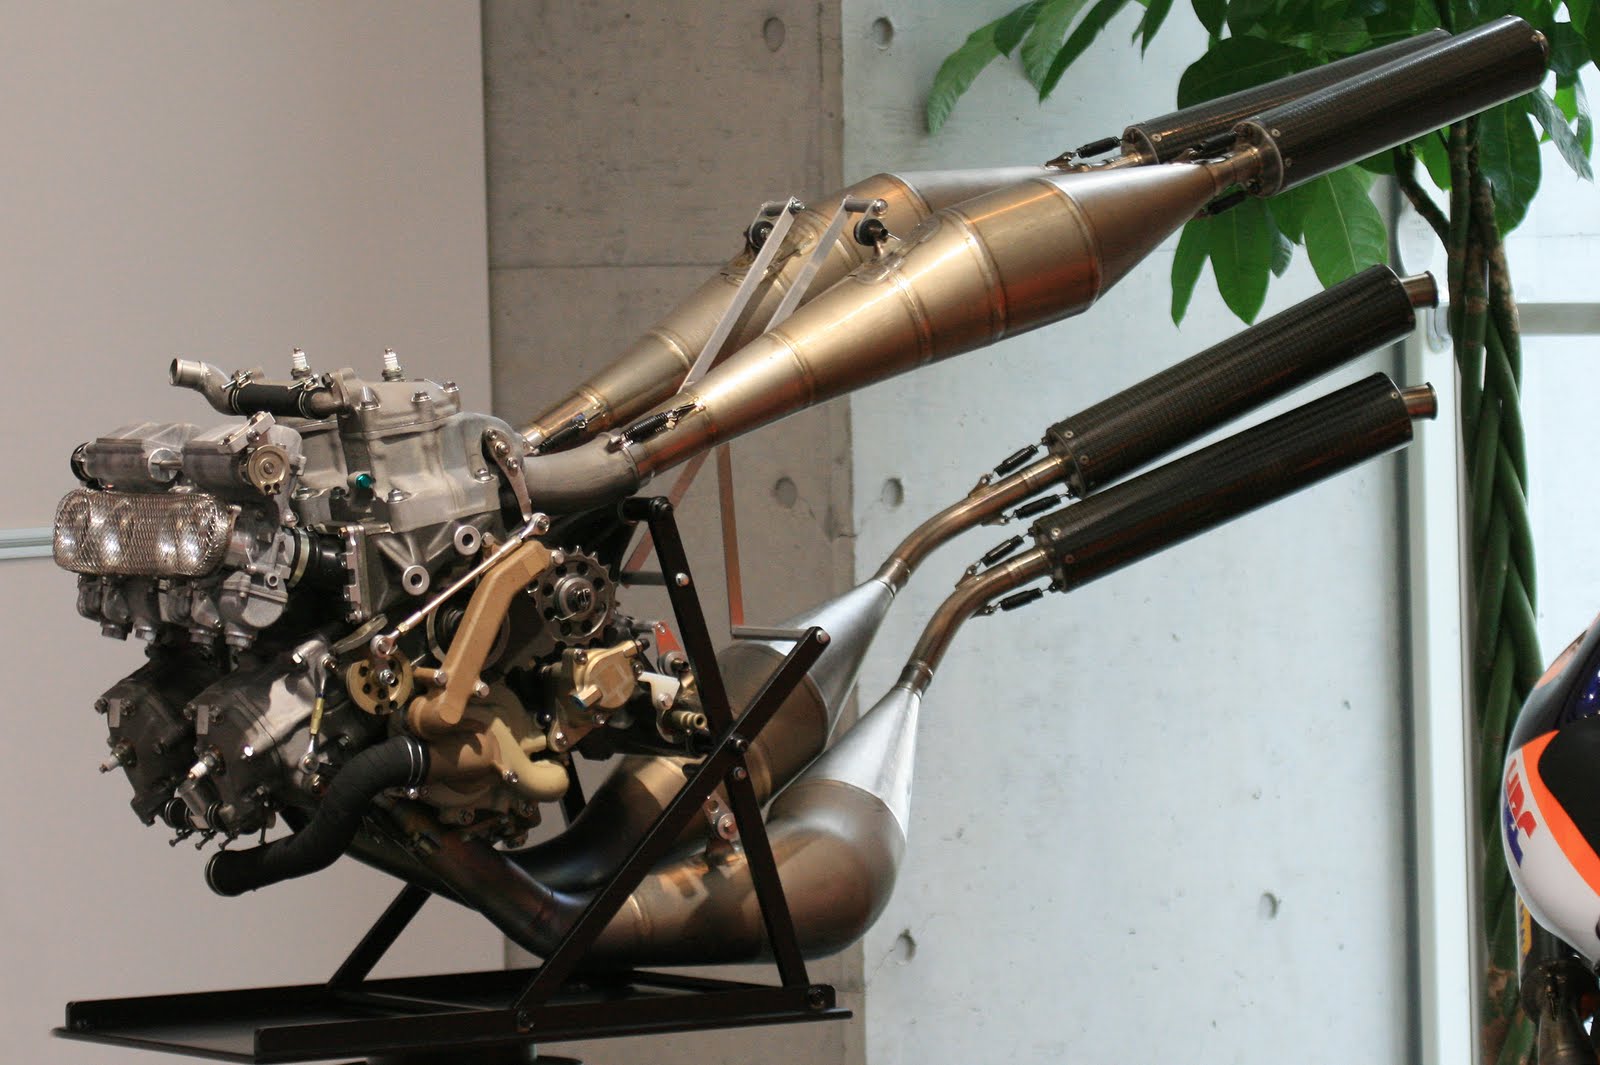 Honda NSR500 engine